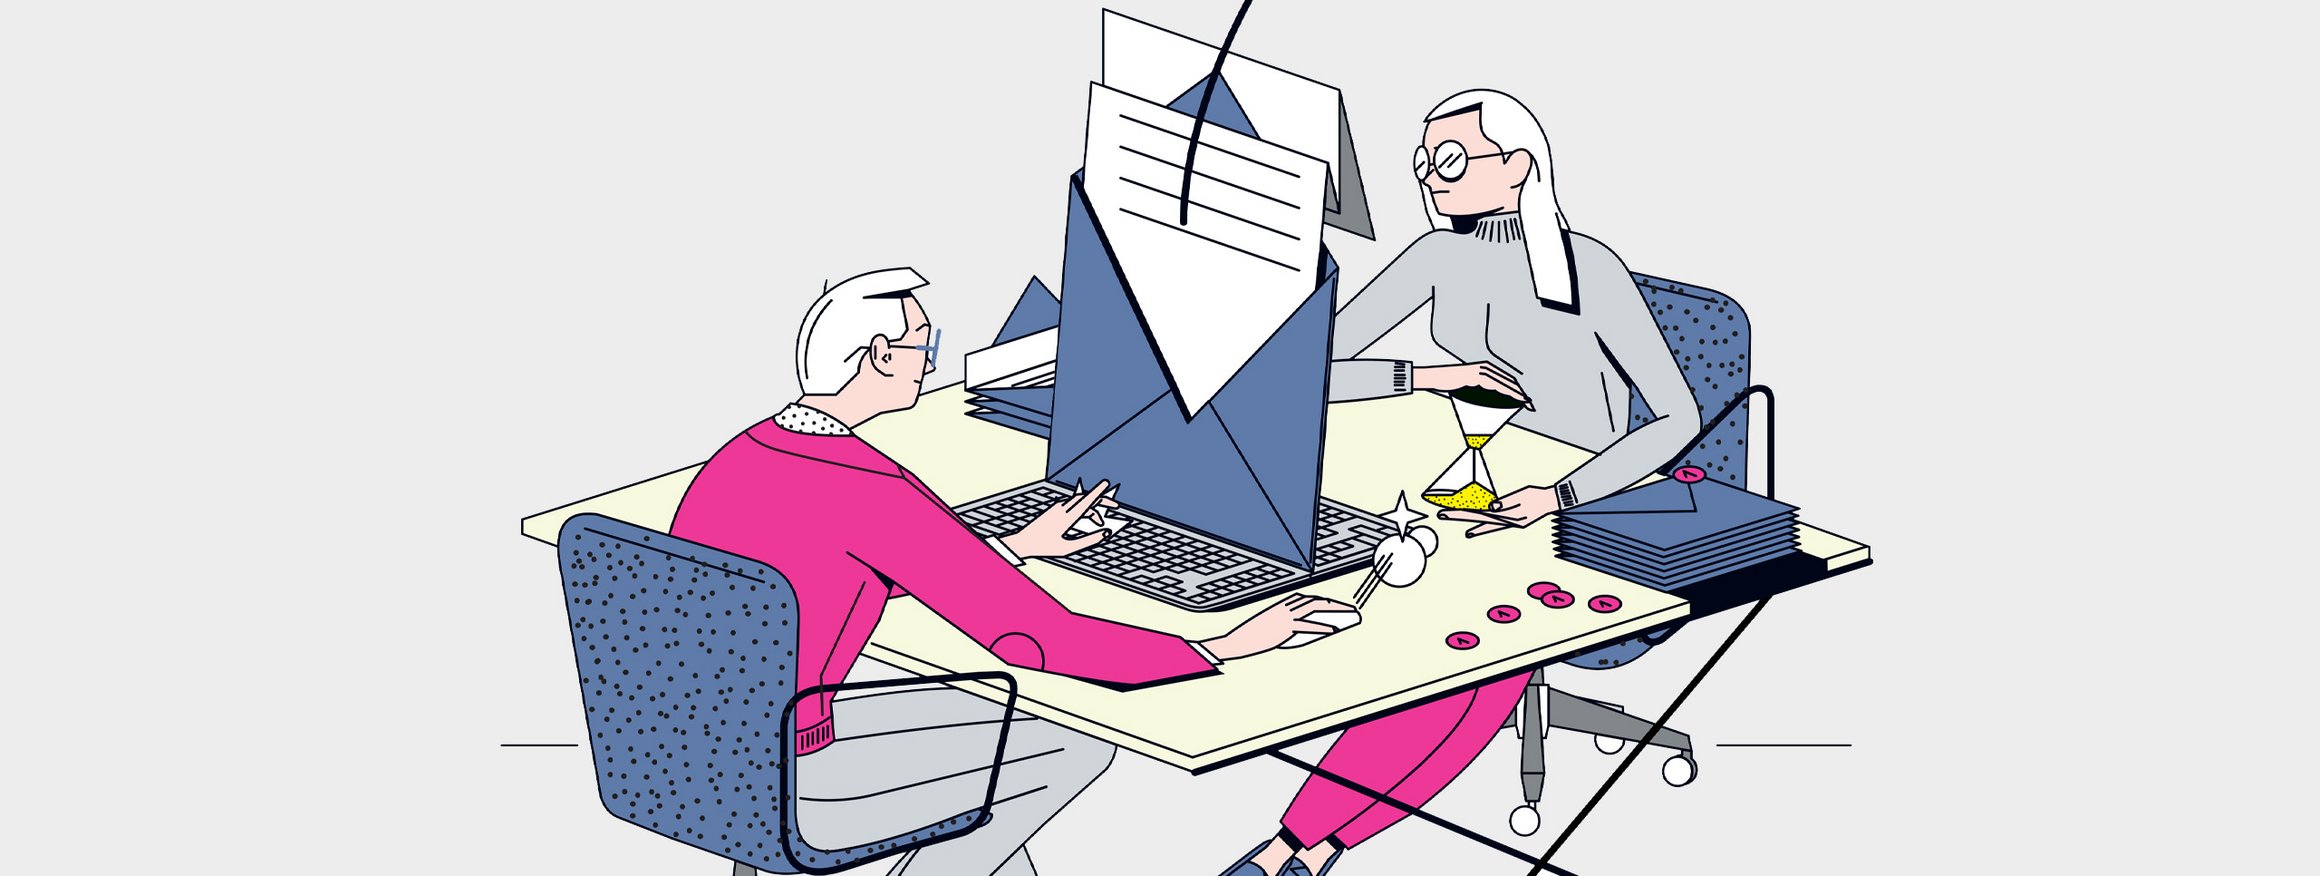 Die Illustration zeigt ein Kollege und eine Kollegin, die sich am Schreibtisch im Büro gegenüber sitzen und sich böse E-Mails schreiben